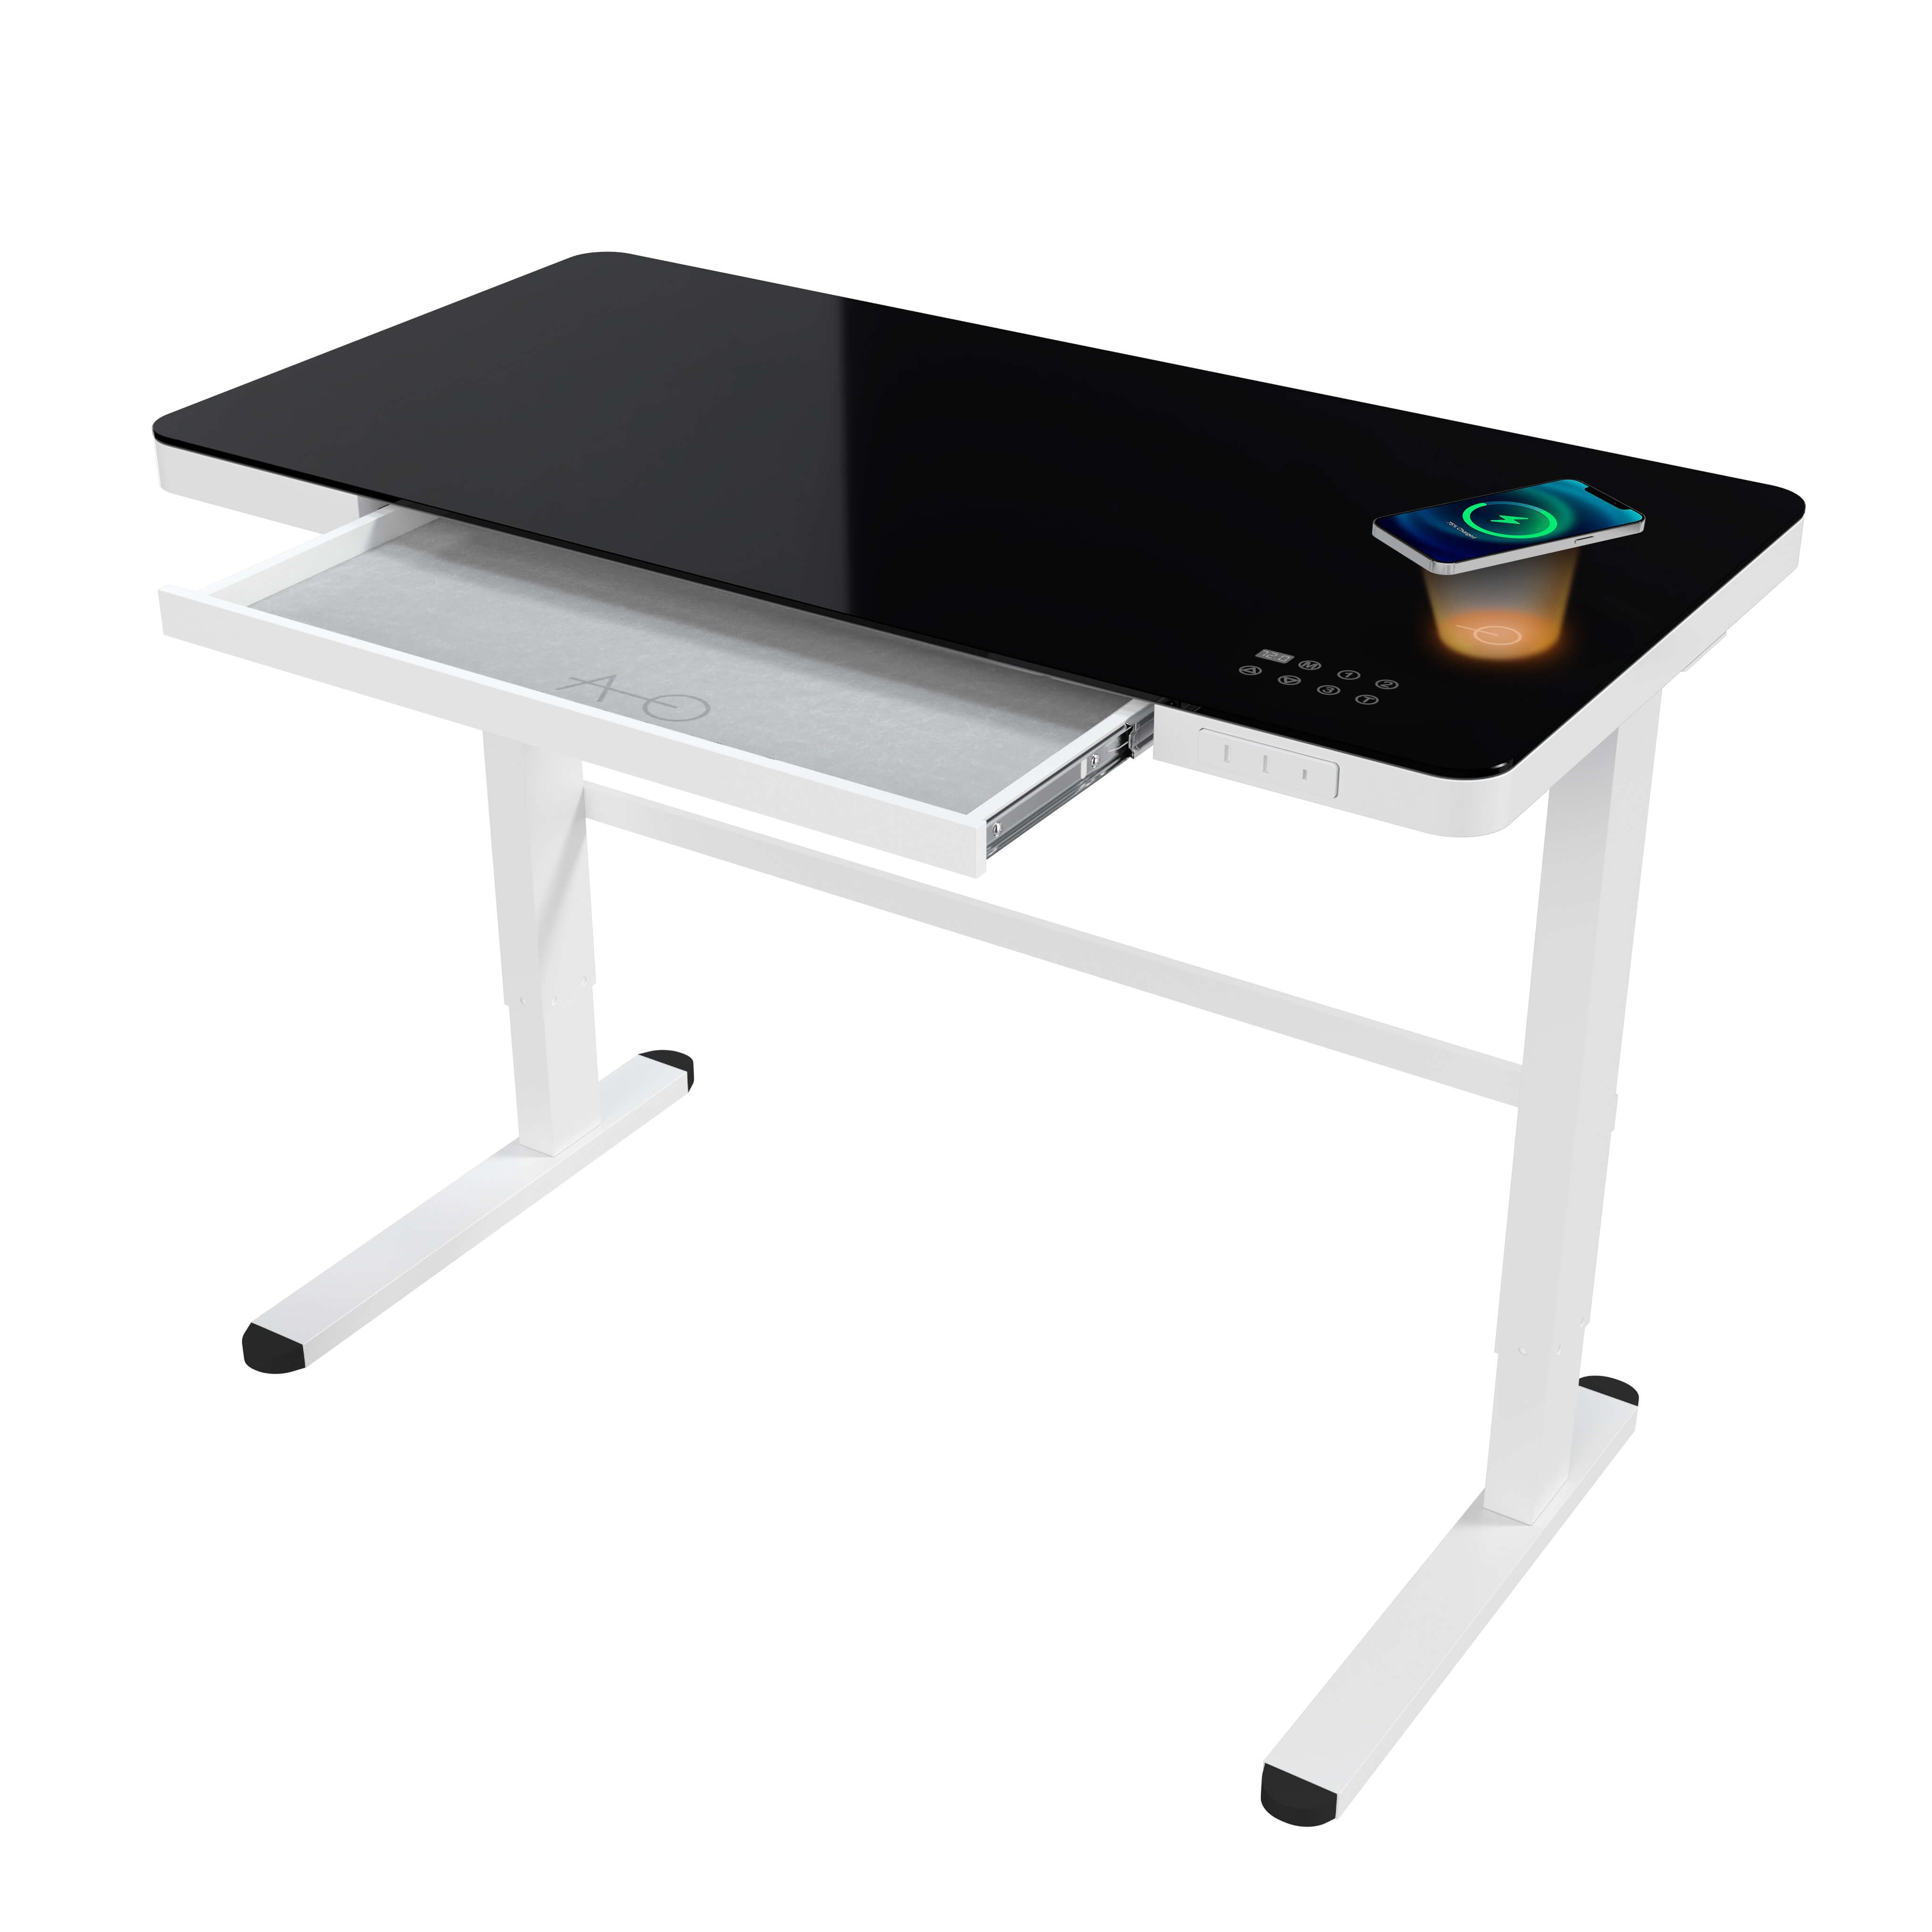 Elektrisch höhenverstellbarer Schreibtisch 120x60 mit Wireless Charger